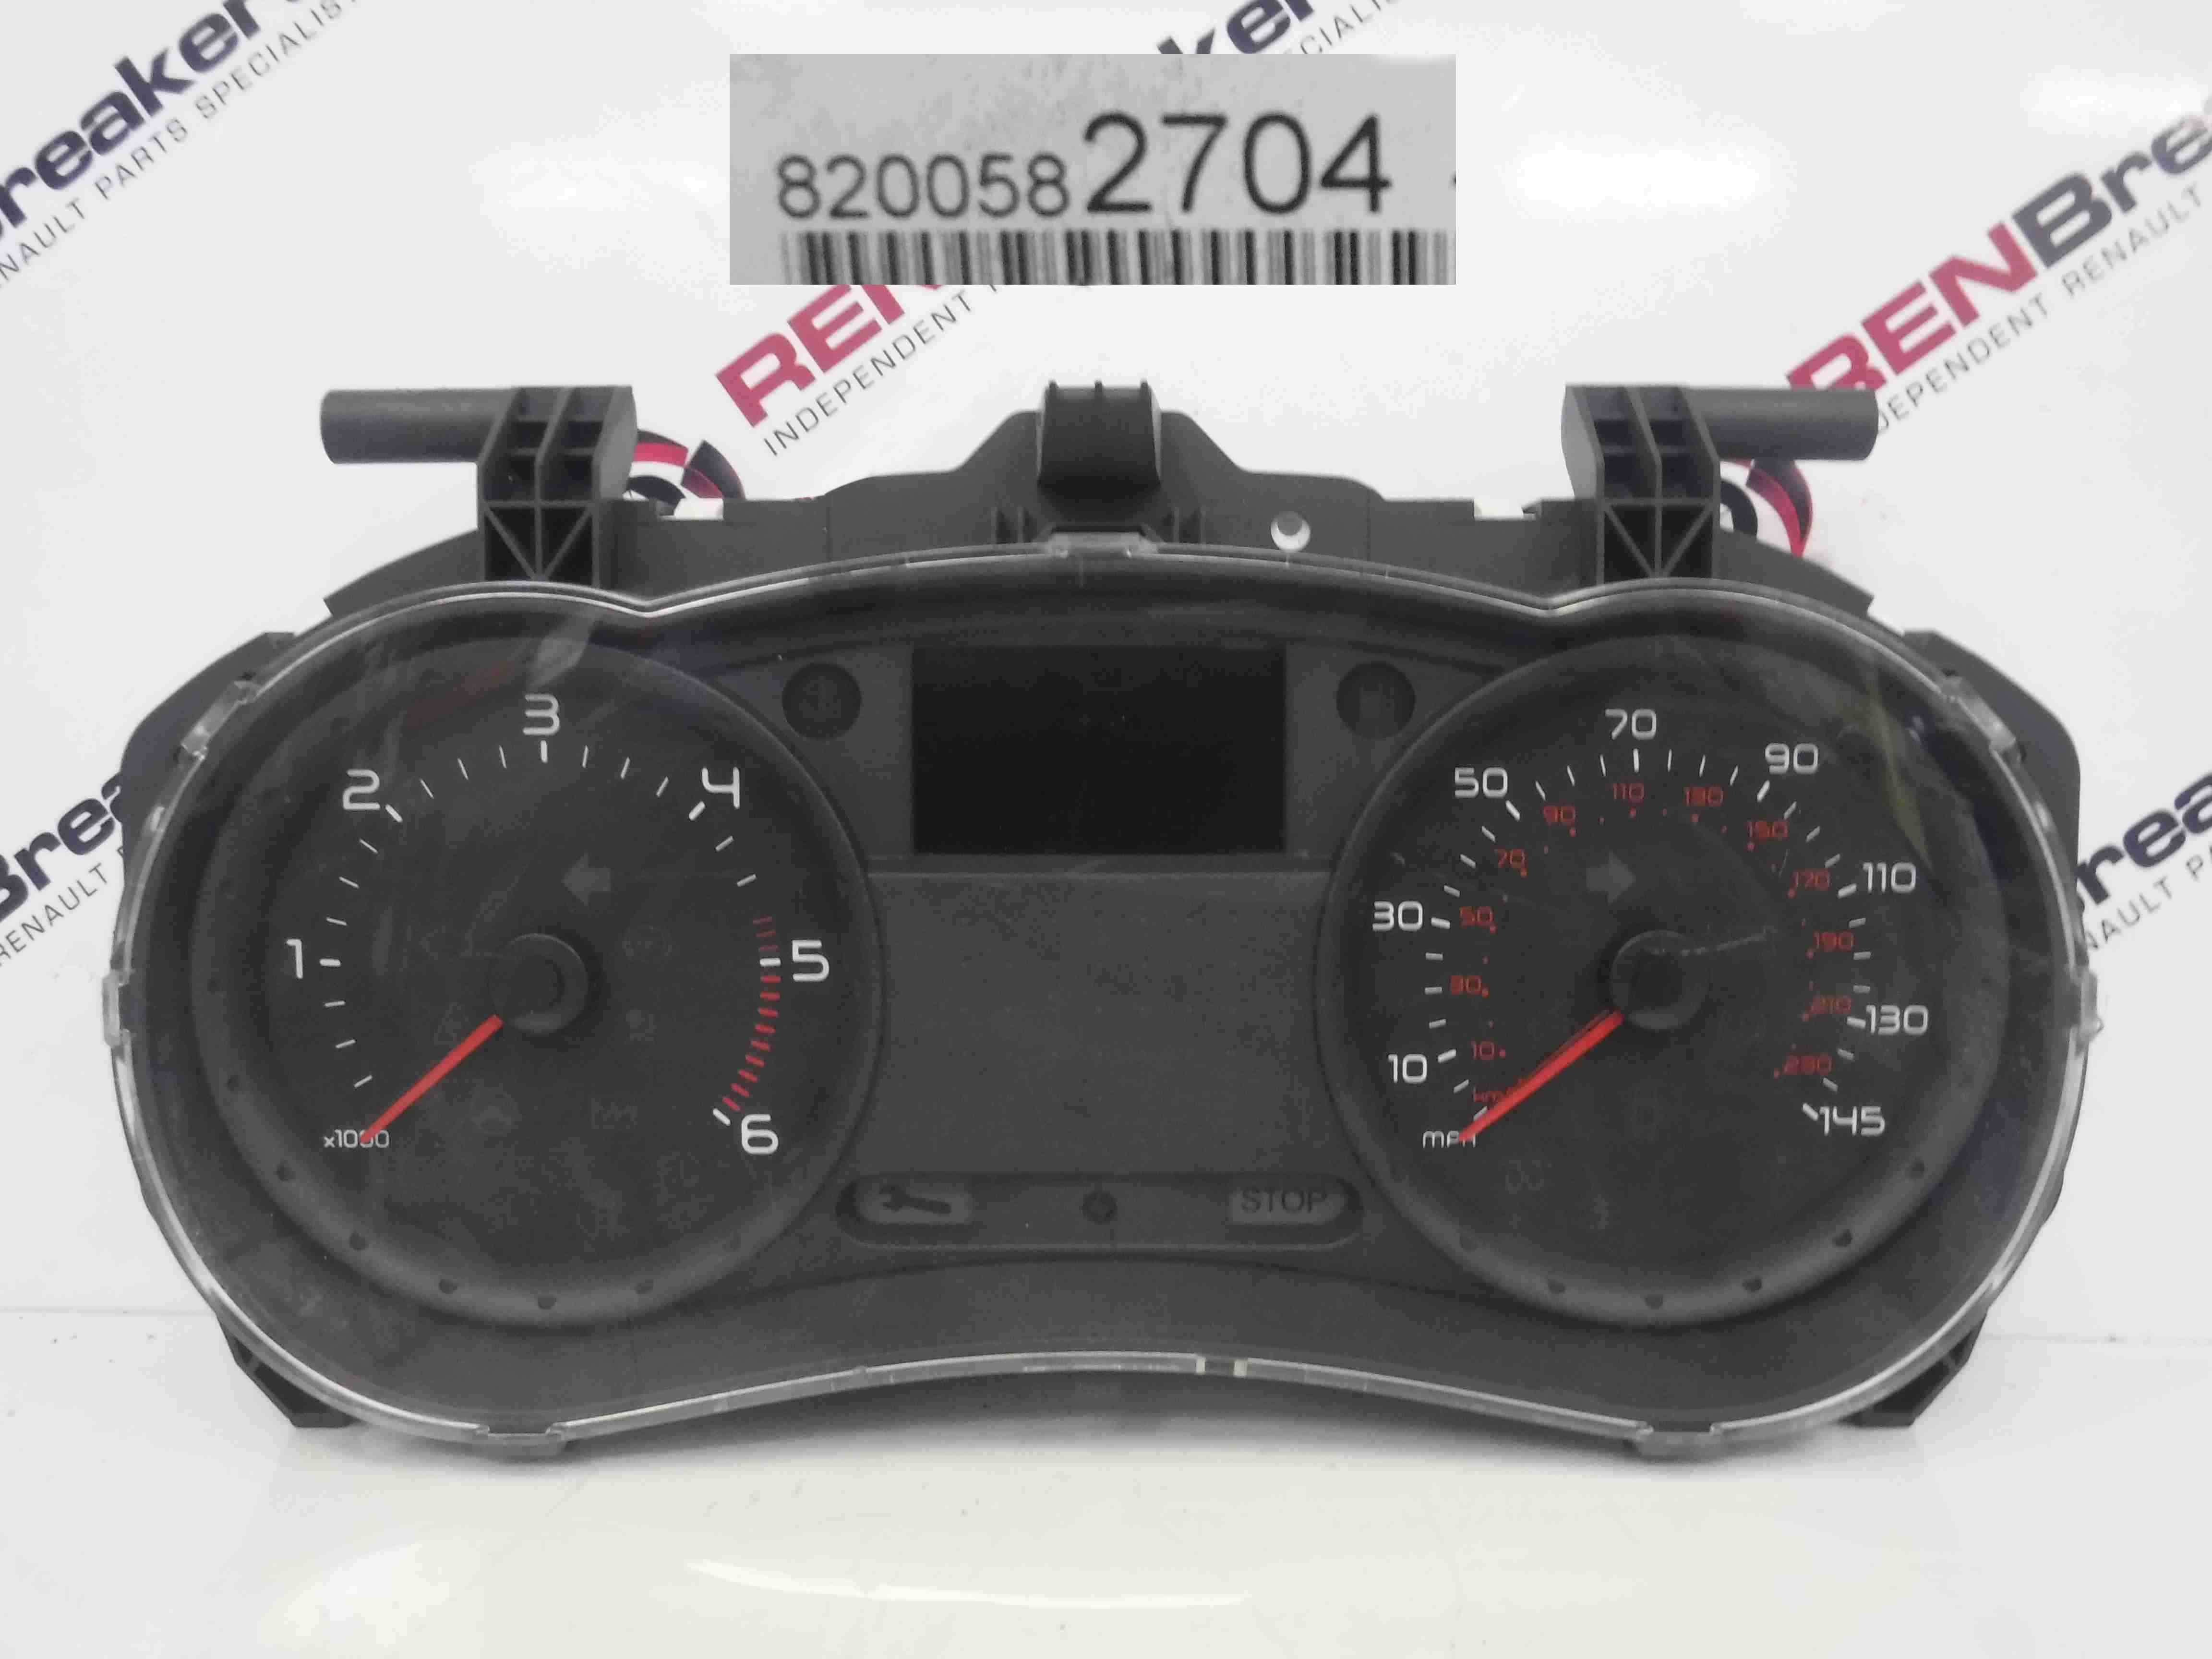 Renault Clio MK3 2005-2012 Instrument Panel Dials Clocks  8200582704